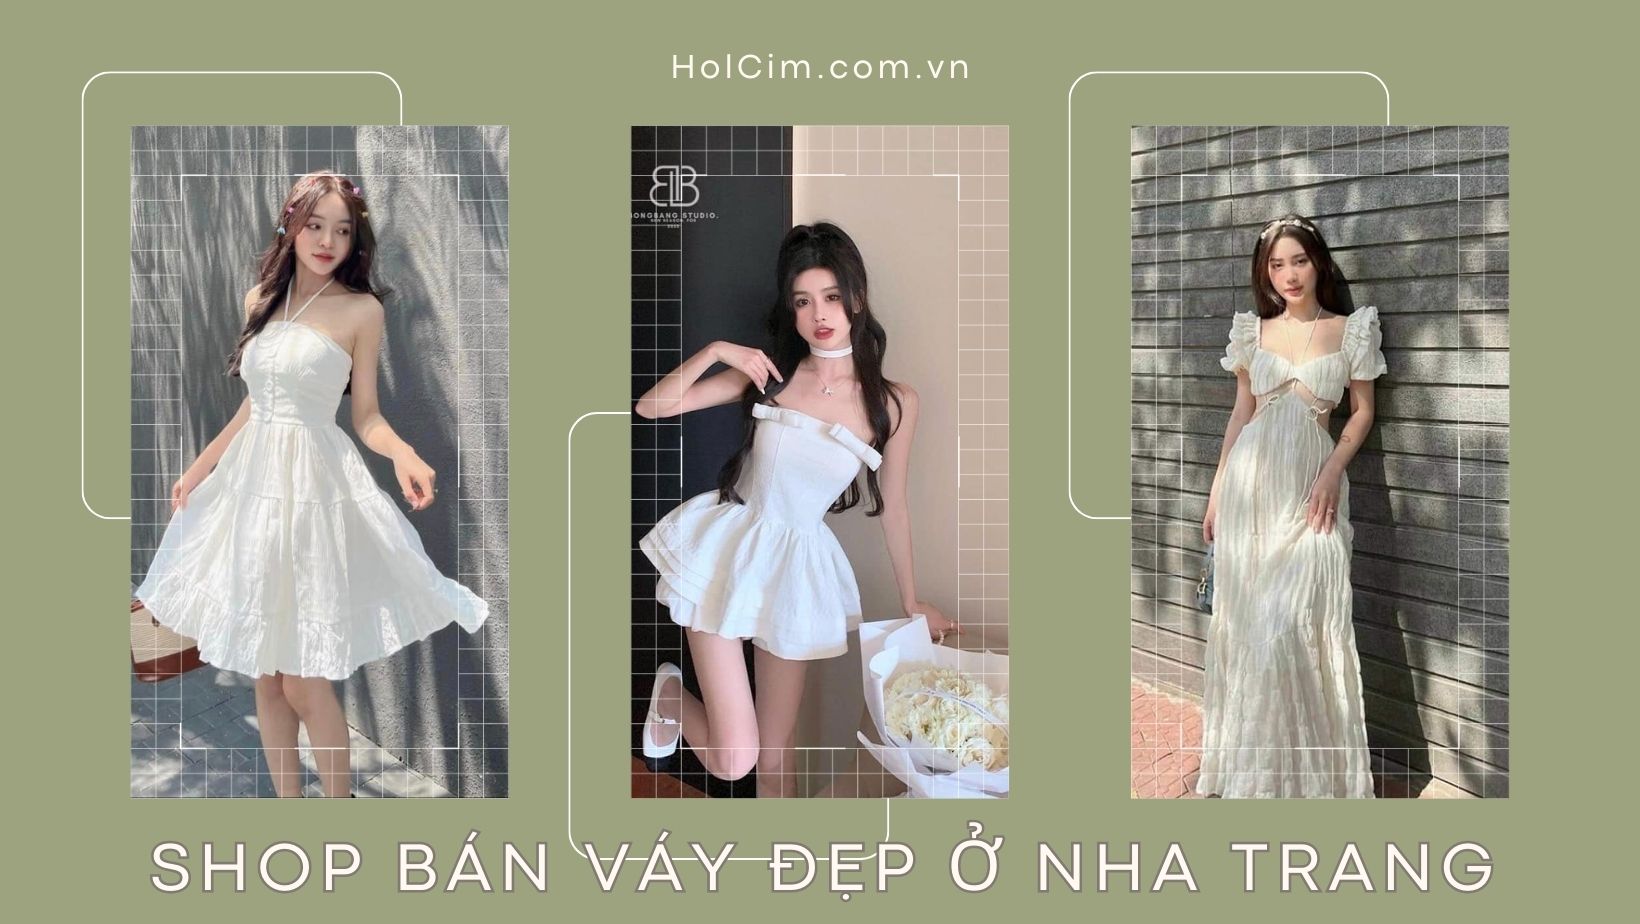 Gợi ý 10 shop bán váy đẹp ở Nha Trang - Khánh Hoà